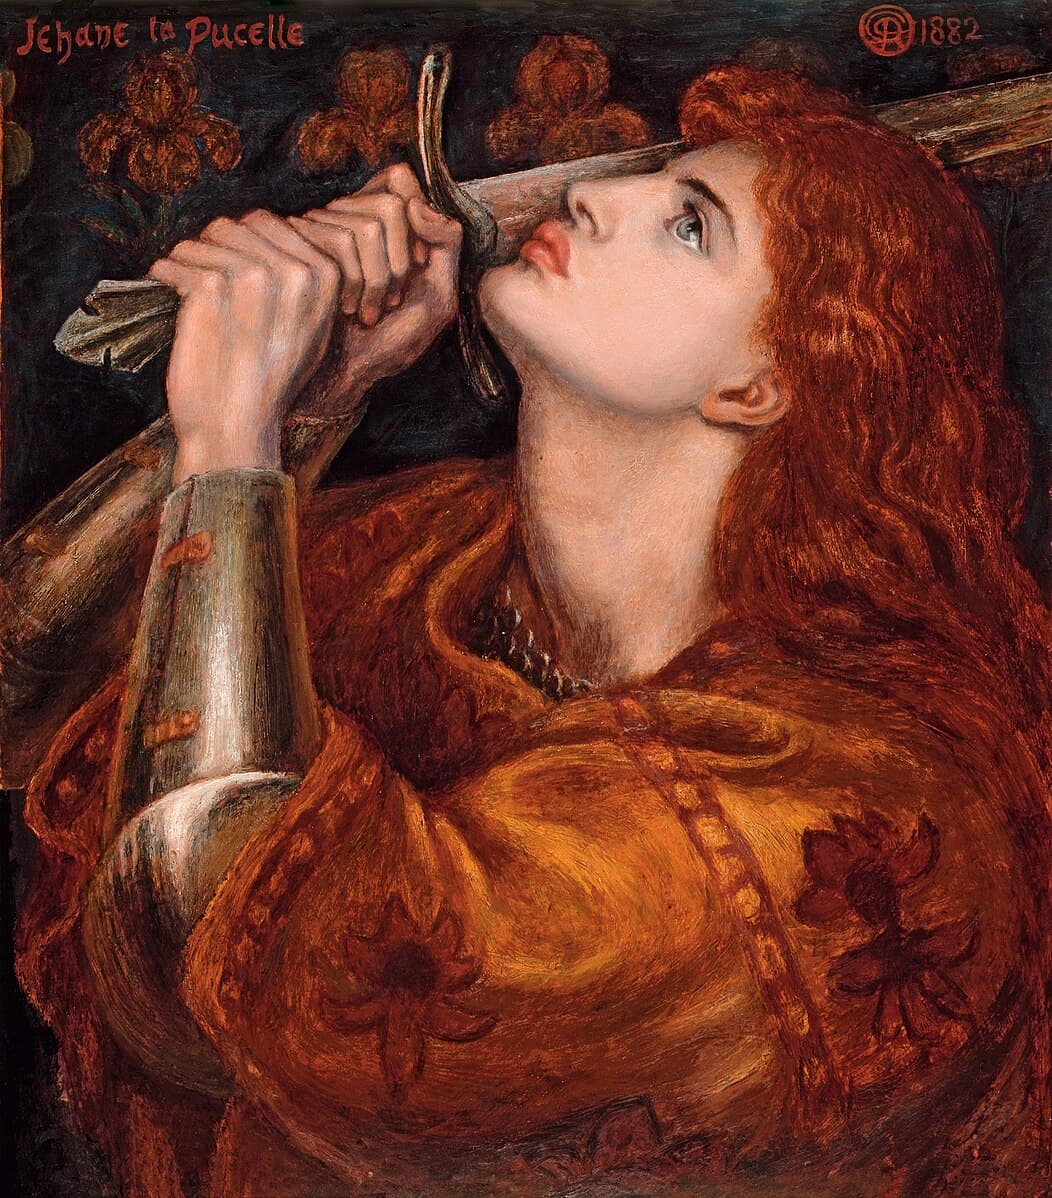 Dante Gabriel Rossetti: Joan of Arc, 1882